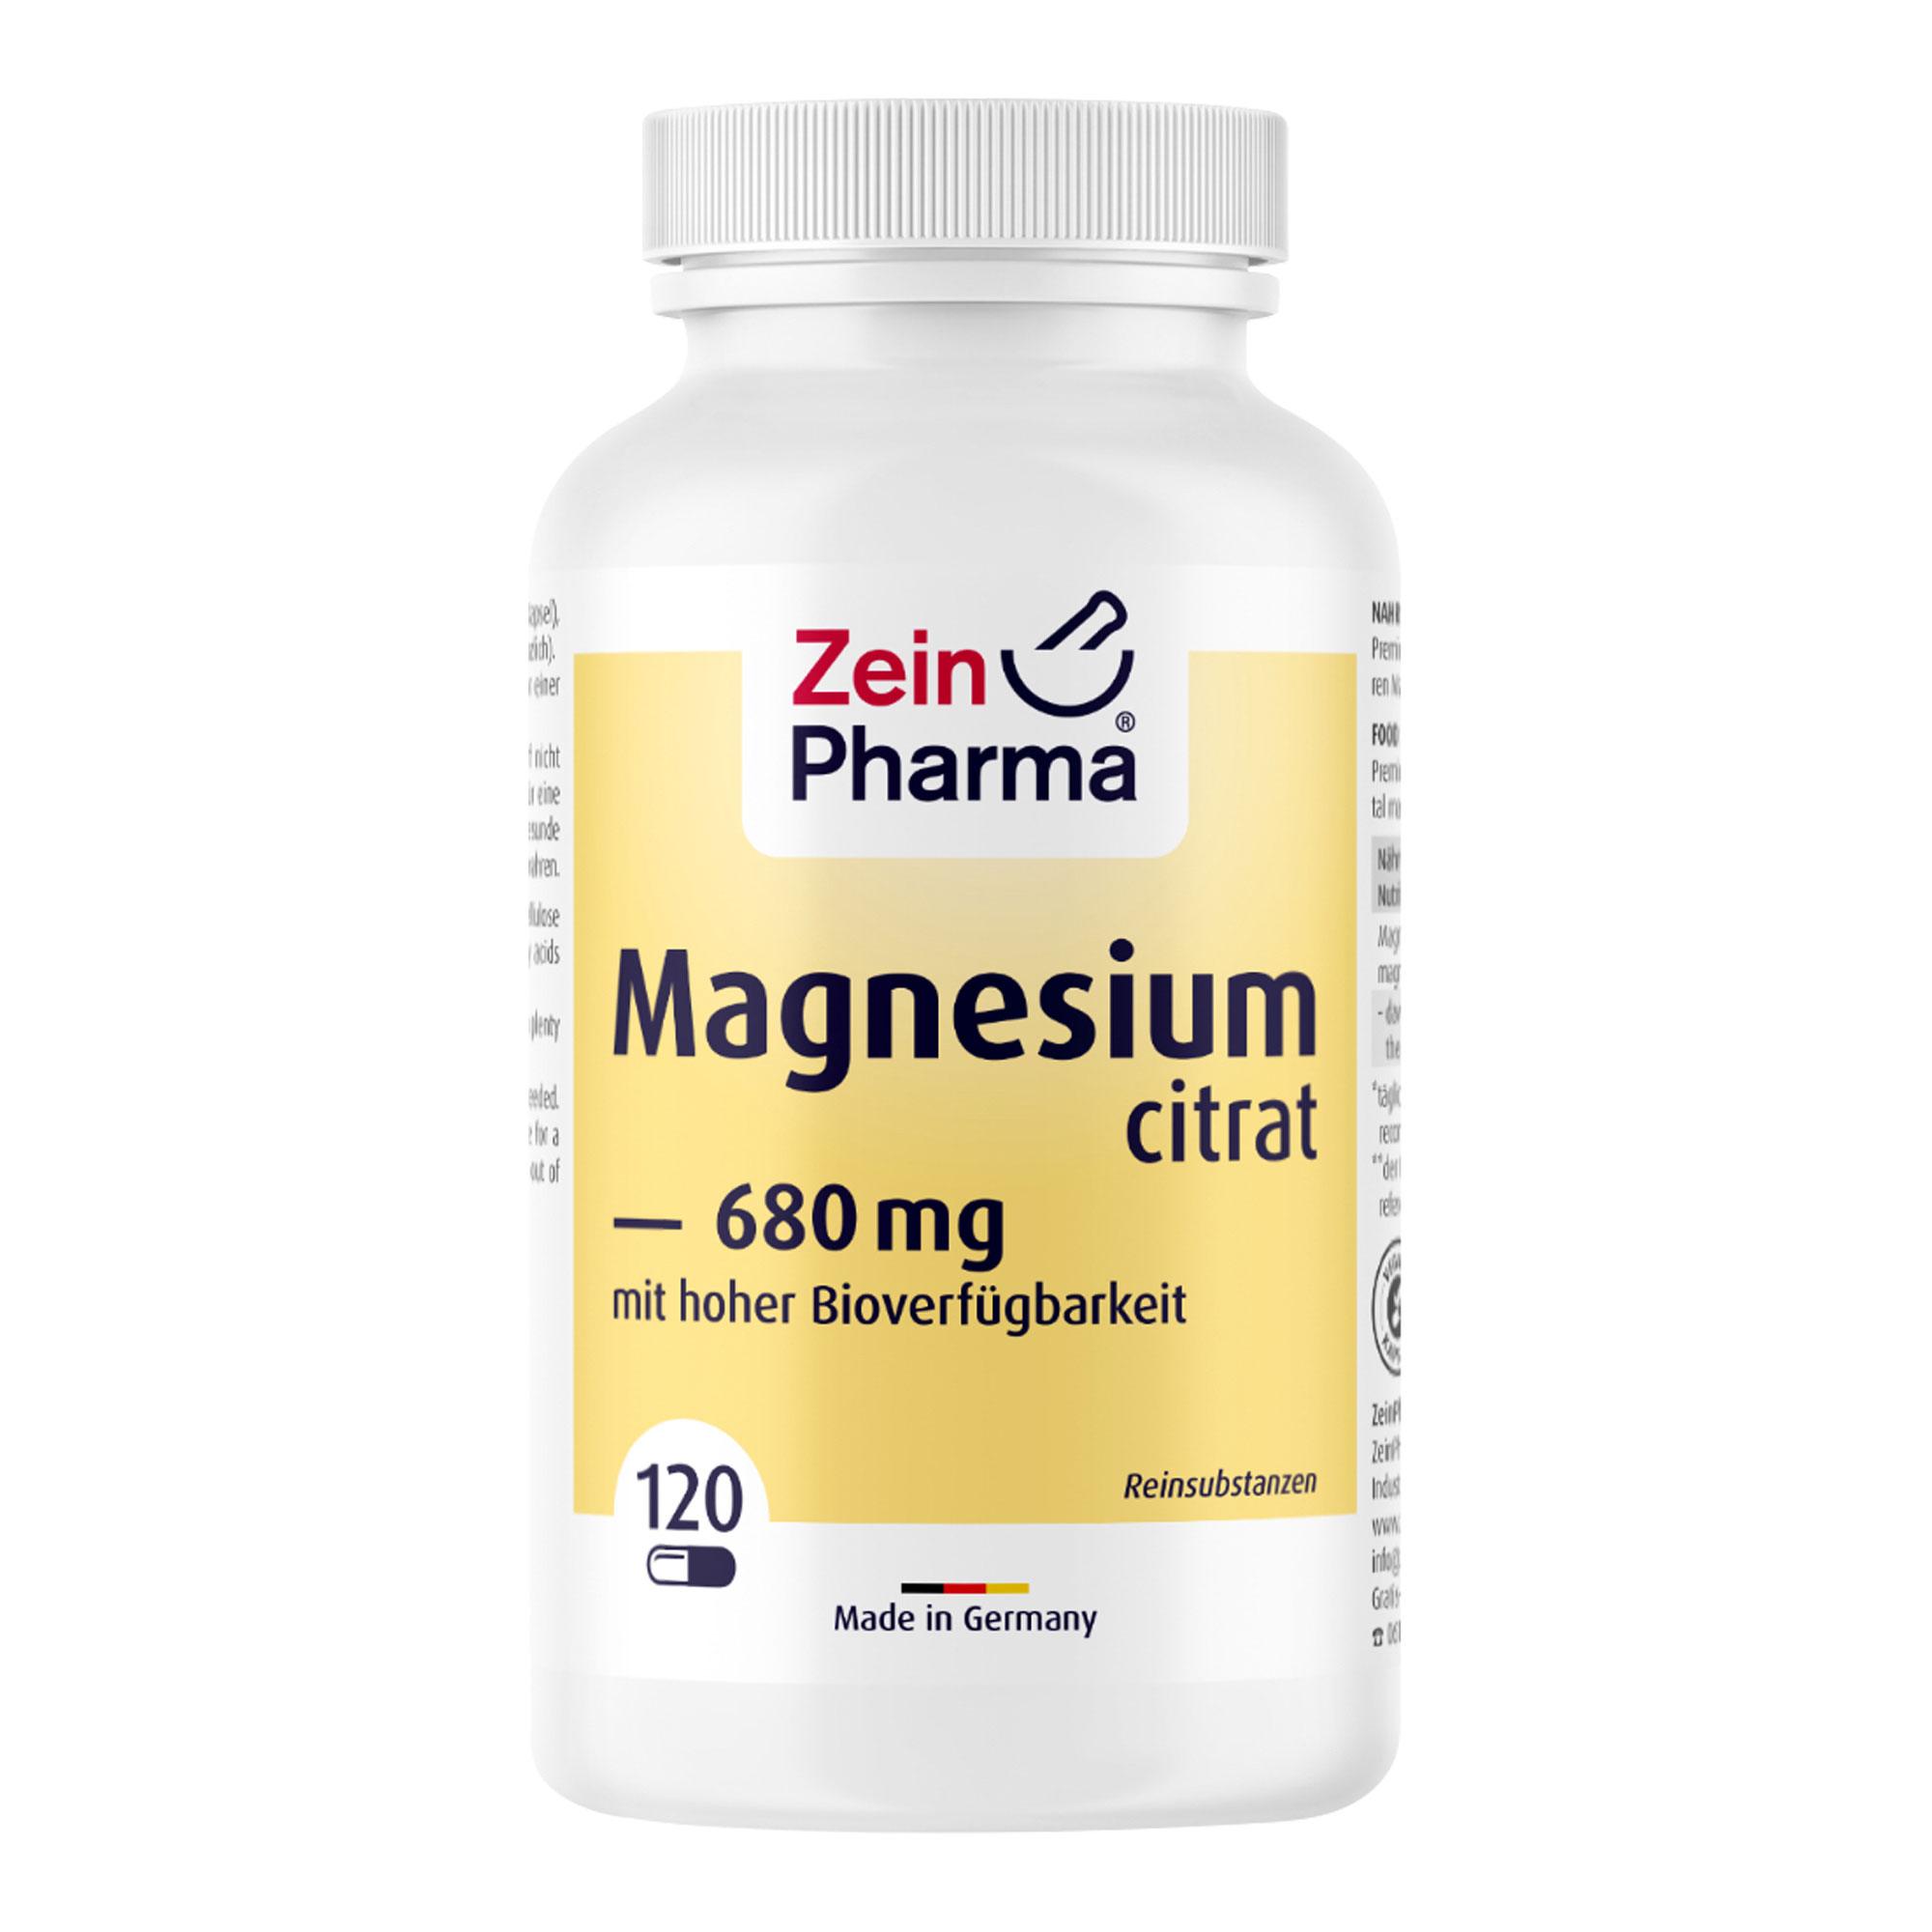 Nahrungsergänzungsmittel mit dem Mineralstoff Magnesium aus Trimagnesiumdicitrat in vegetarischen Kapseln.